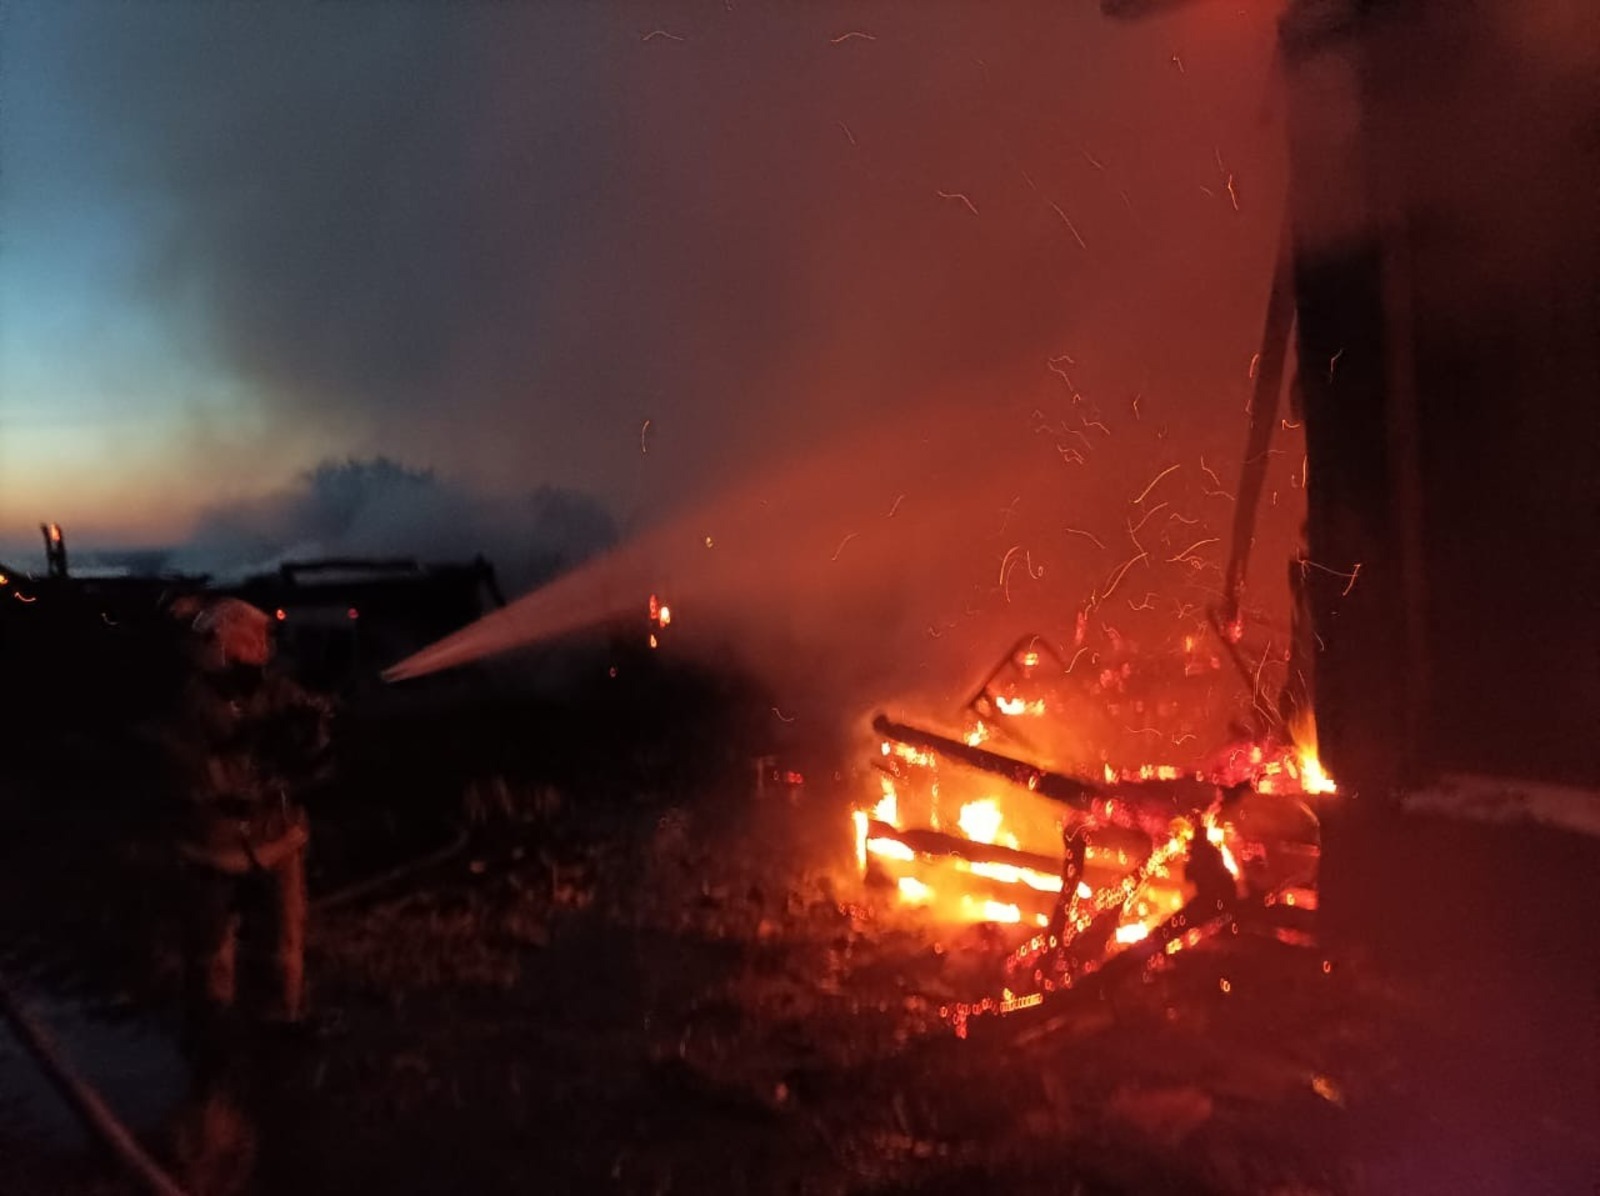 В Башкирии сгорели дом и сарай, есть пострадавшие